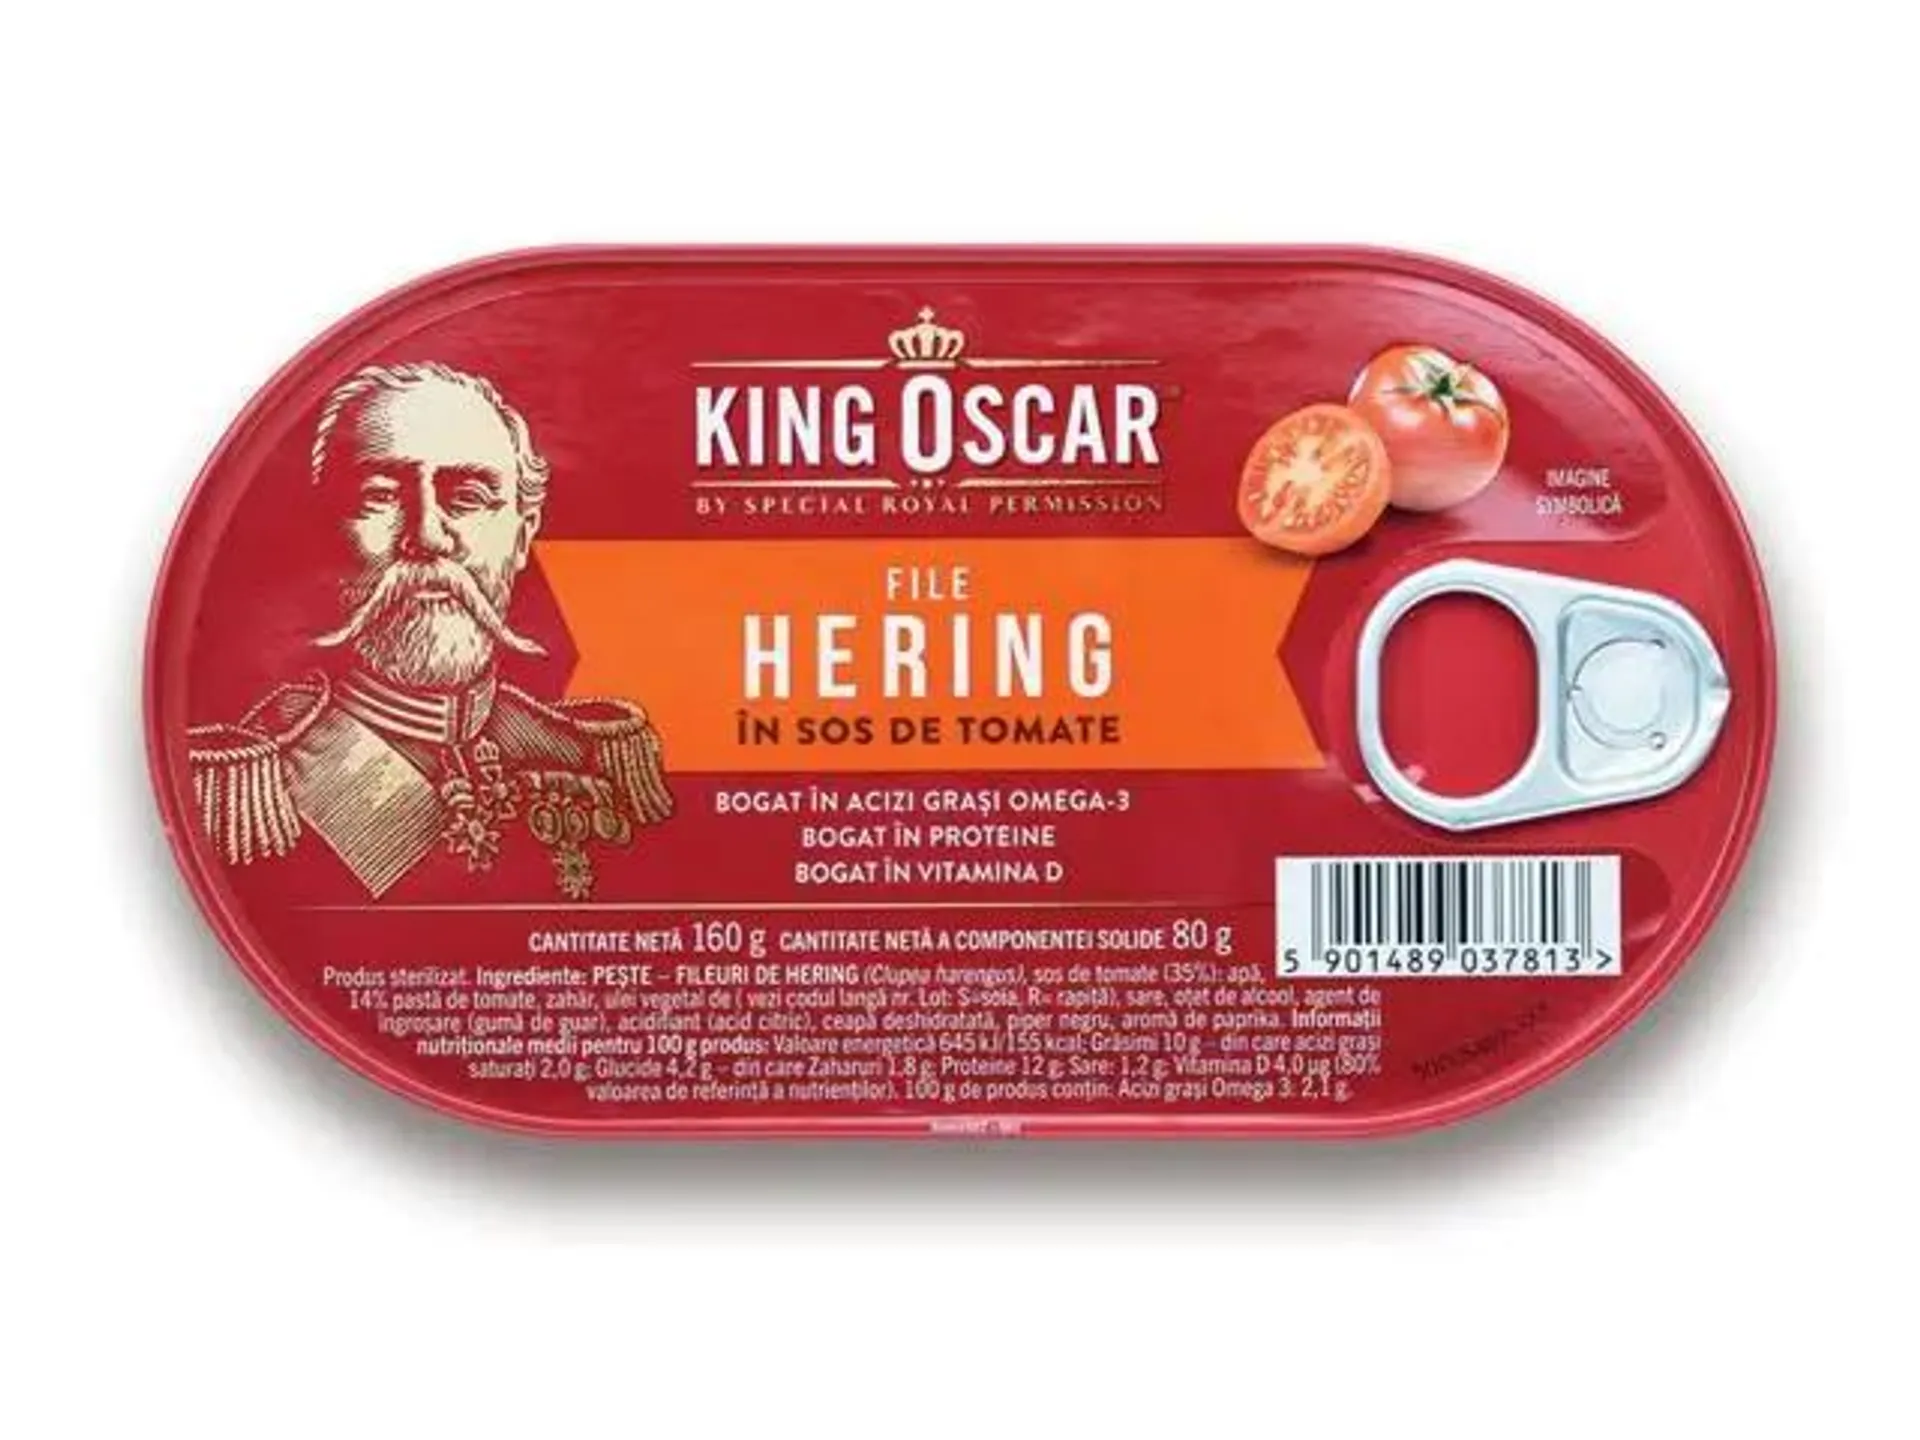 Hering File in sos tomat King Oscar 160G